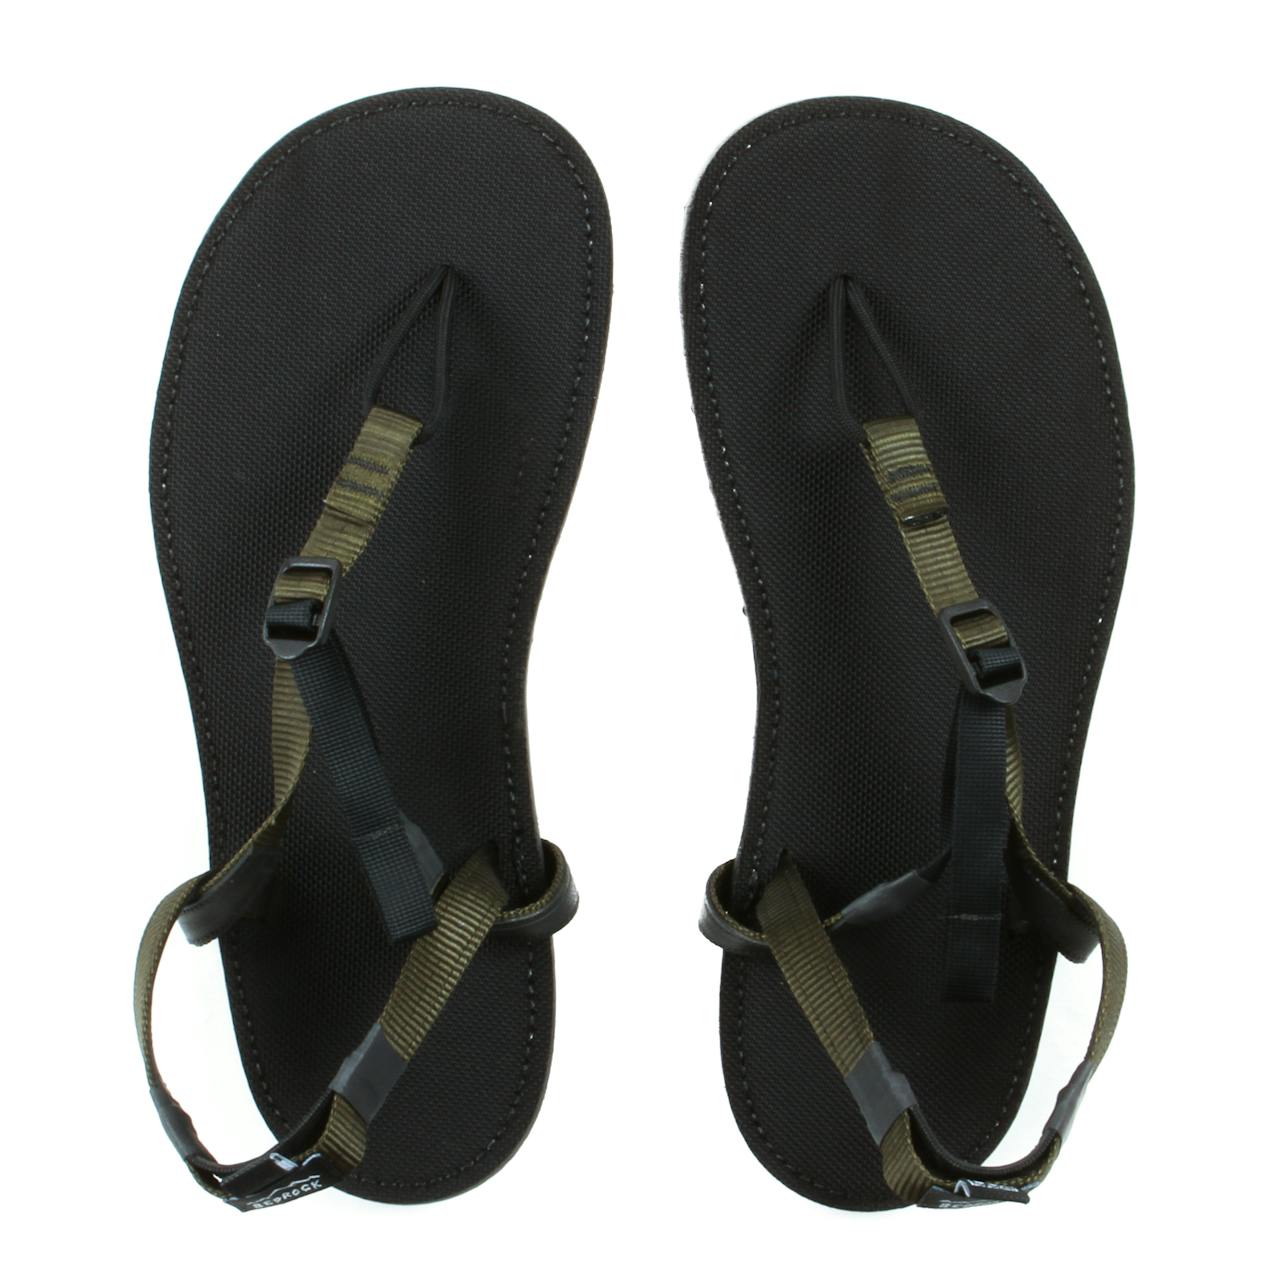 Bedrock Sandals Syncline 2.0